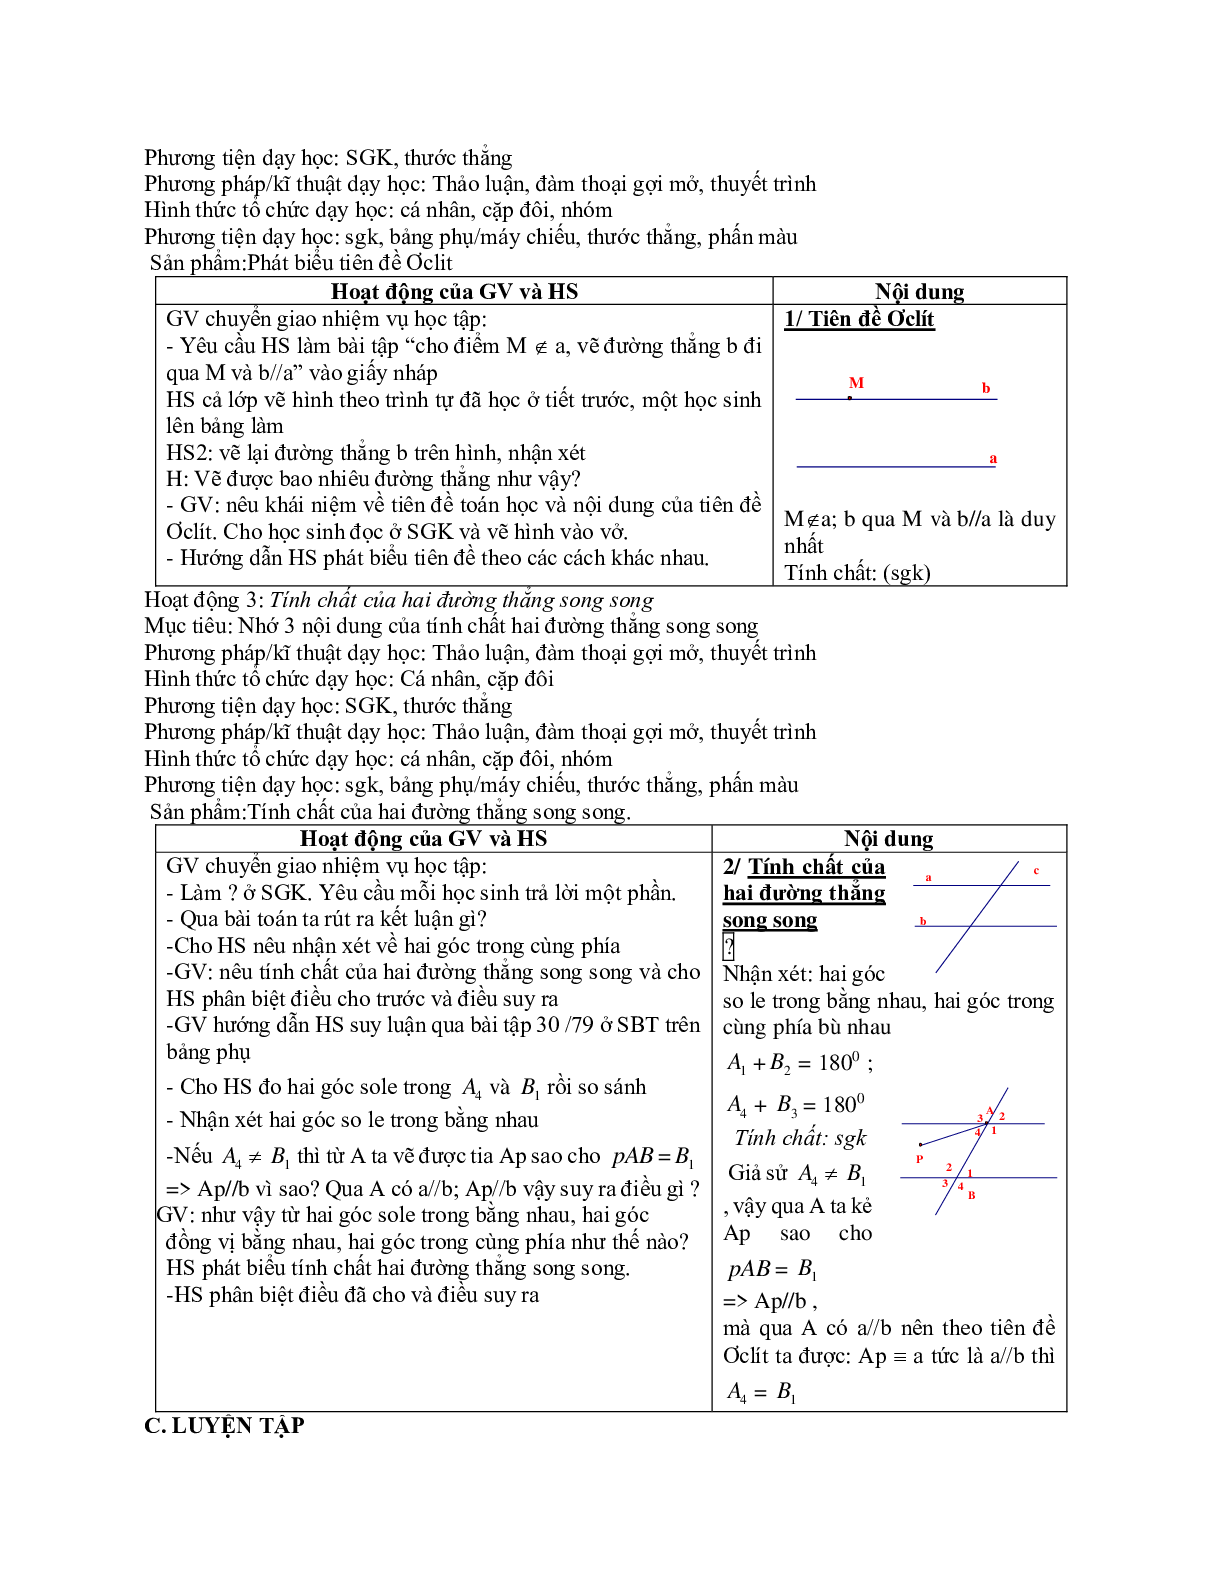 Giáo án Toán 7 bài 5: Tiên đề Ơ-clit về đường thẳng song song mới nhất (trang 2)